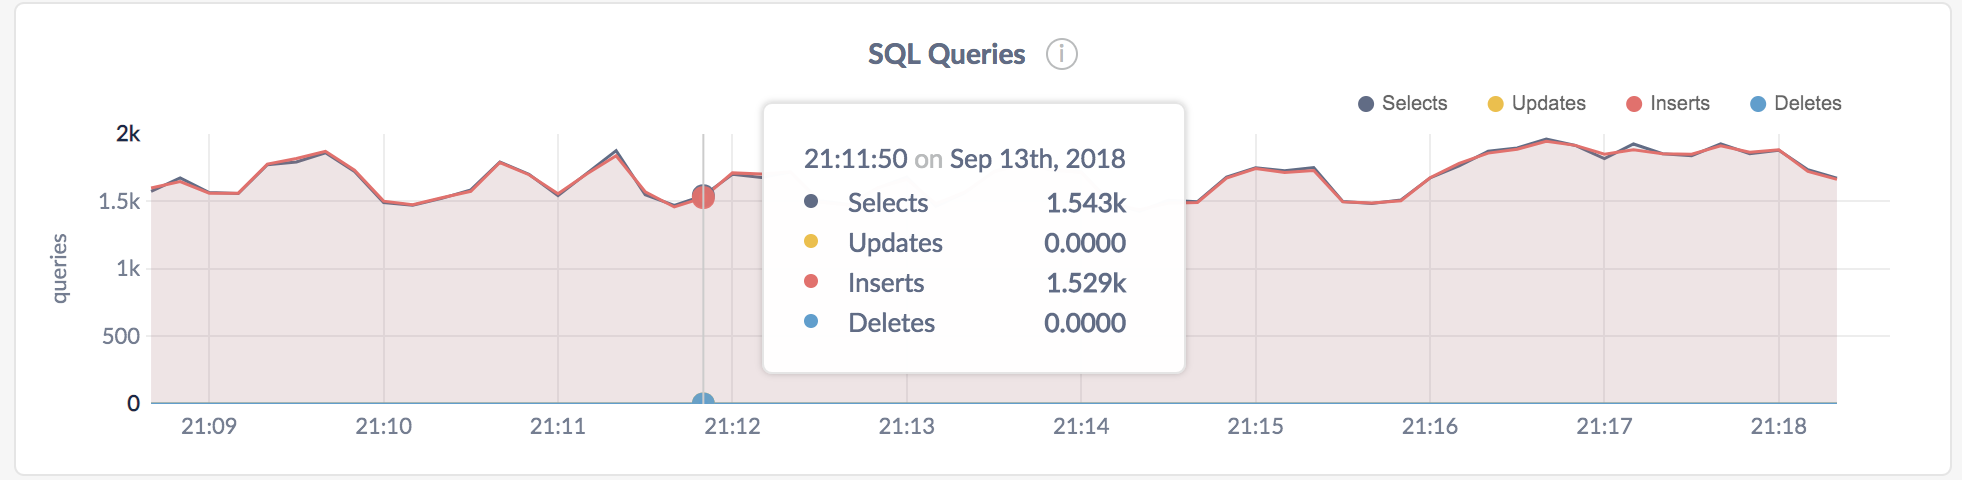 CockroachDB Admin UI SQL Queries graph